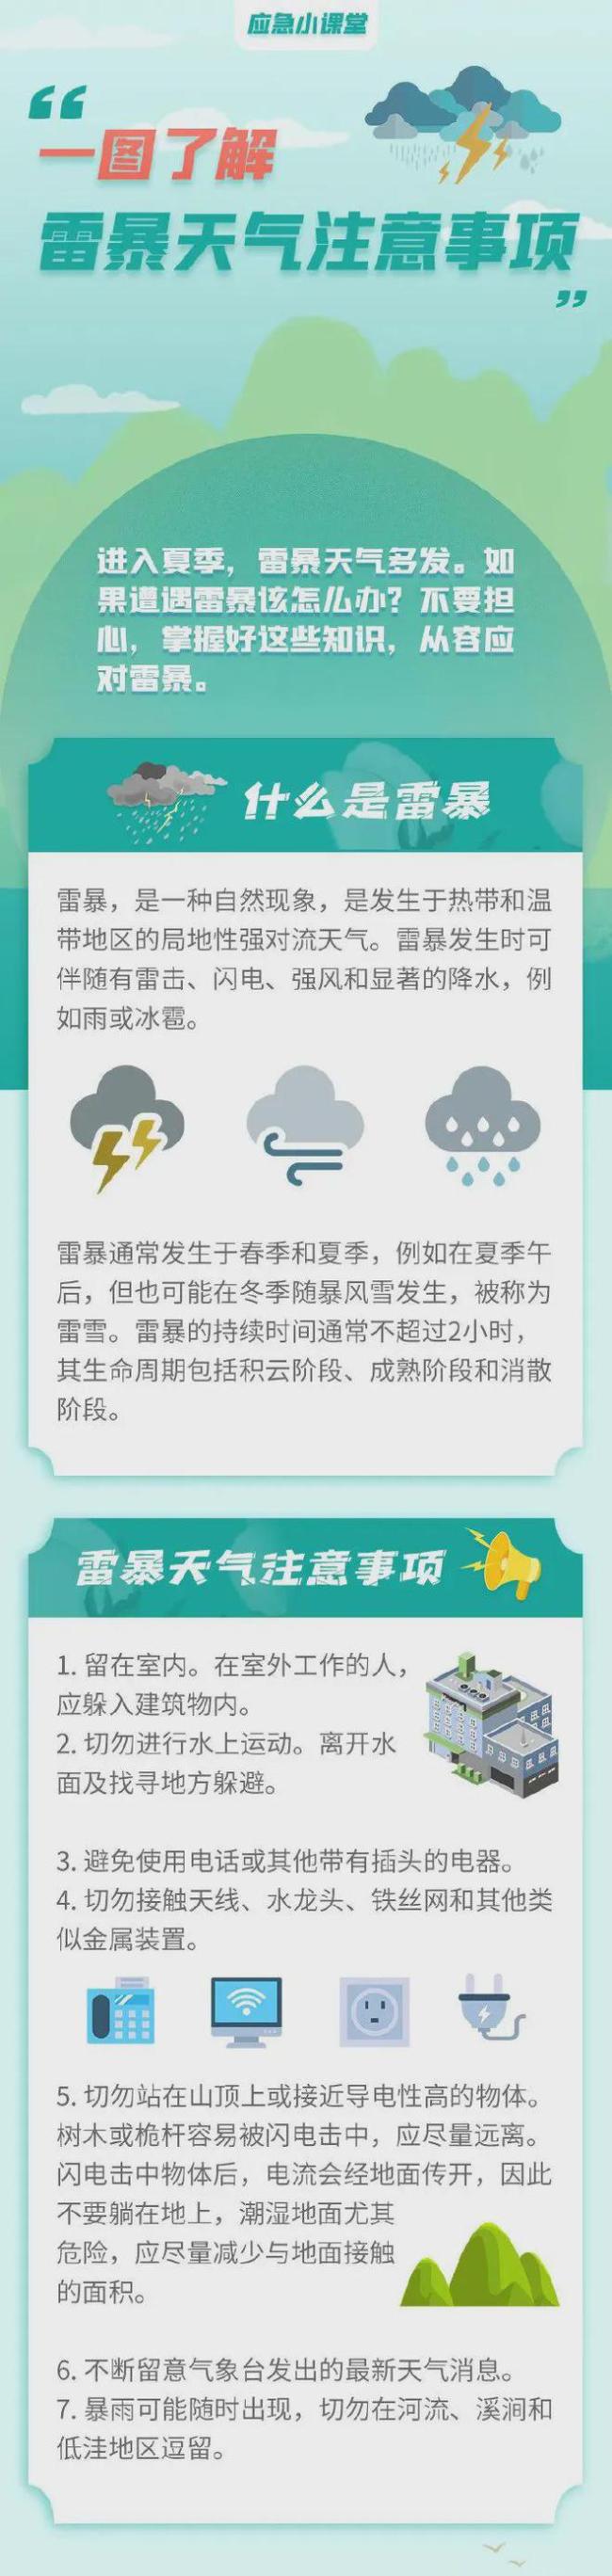 雷阵雨将自西向东“扫过”北京，目前门头沟马栏雨最大 晚高峰预警，防雨防风保安全